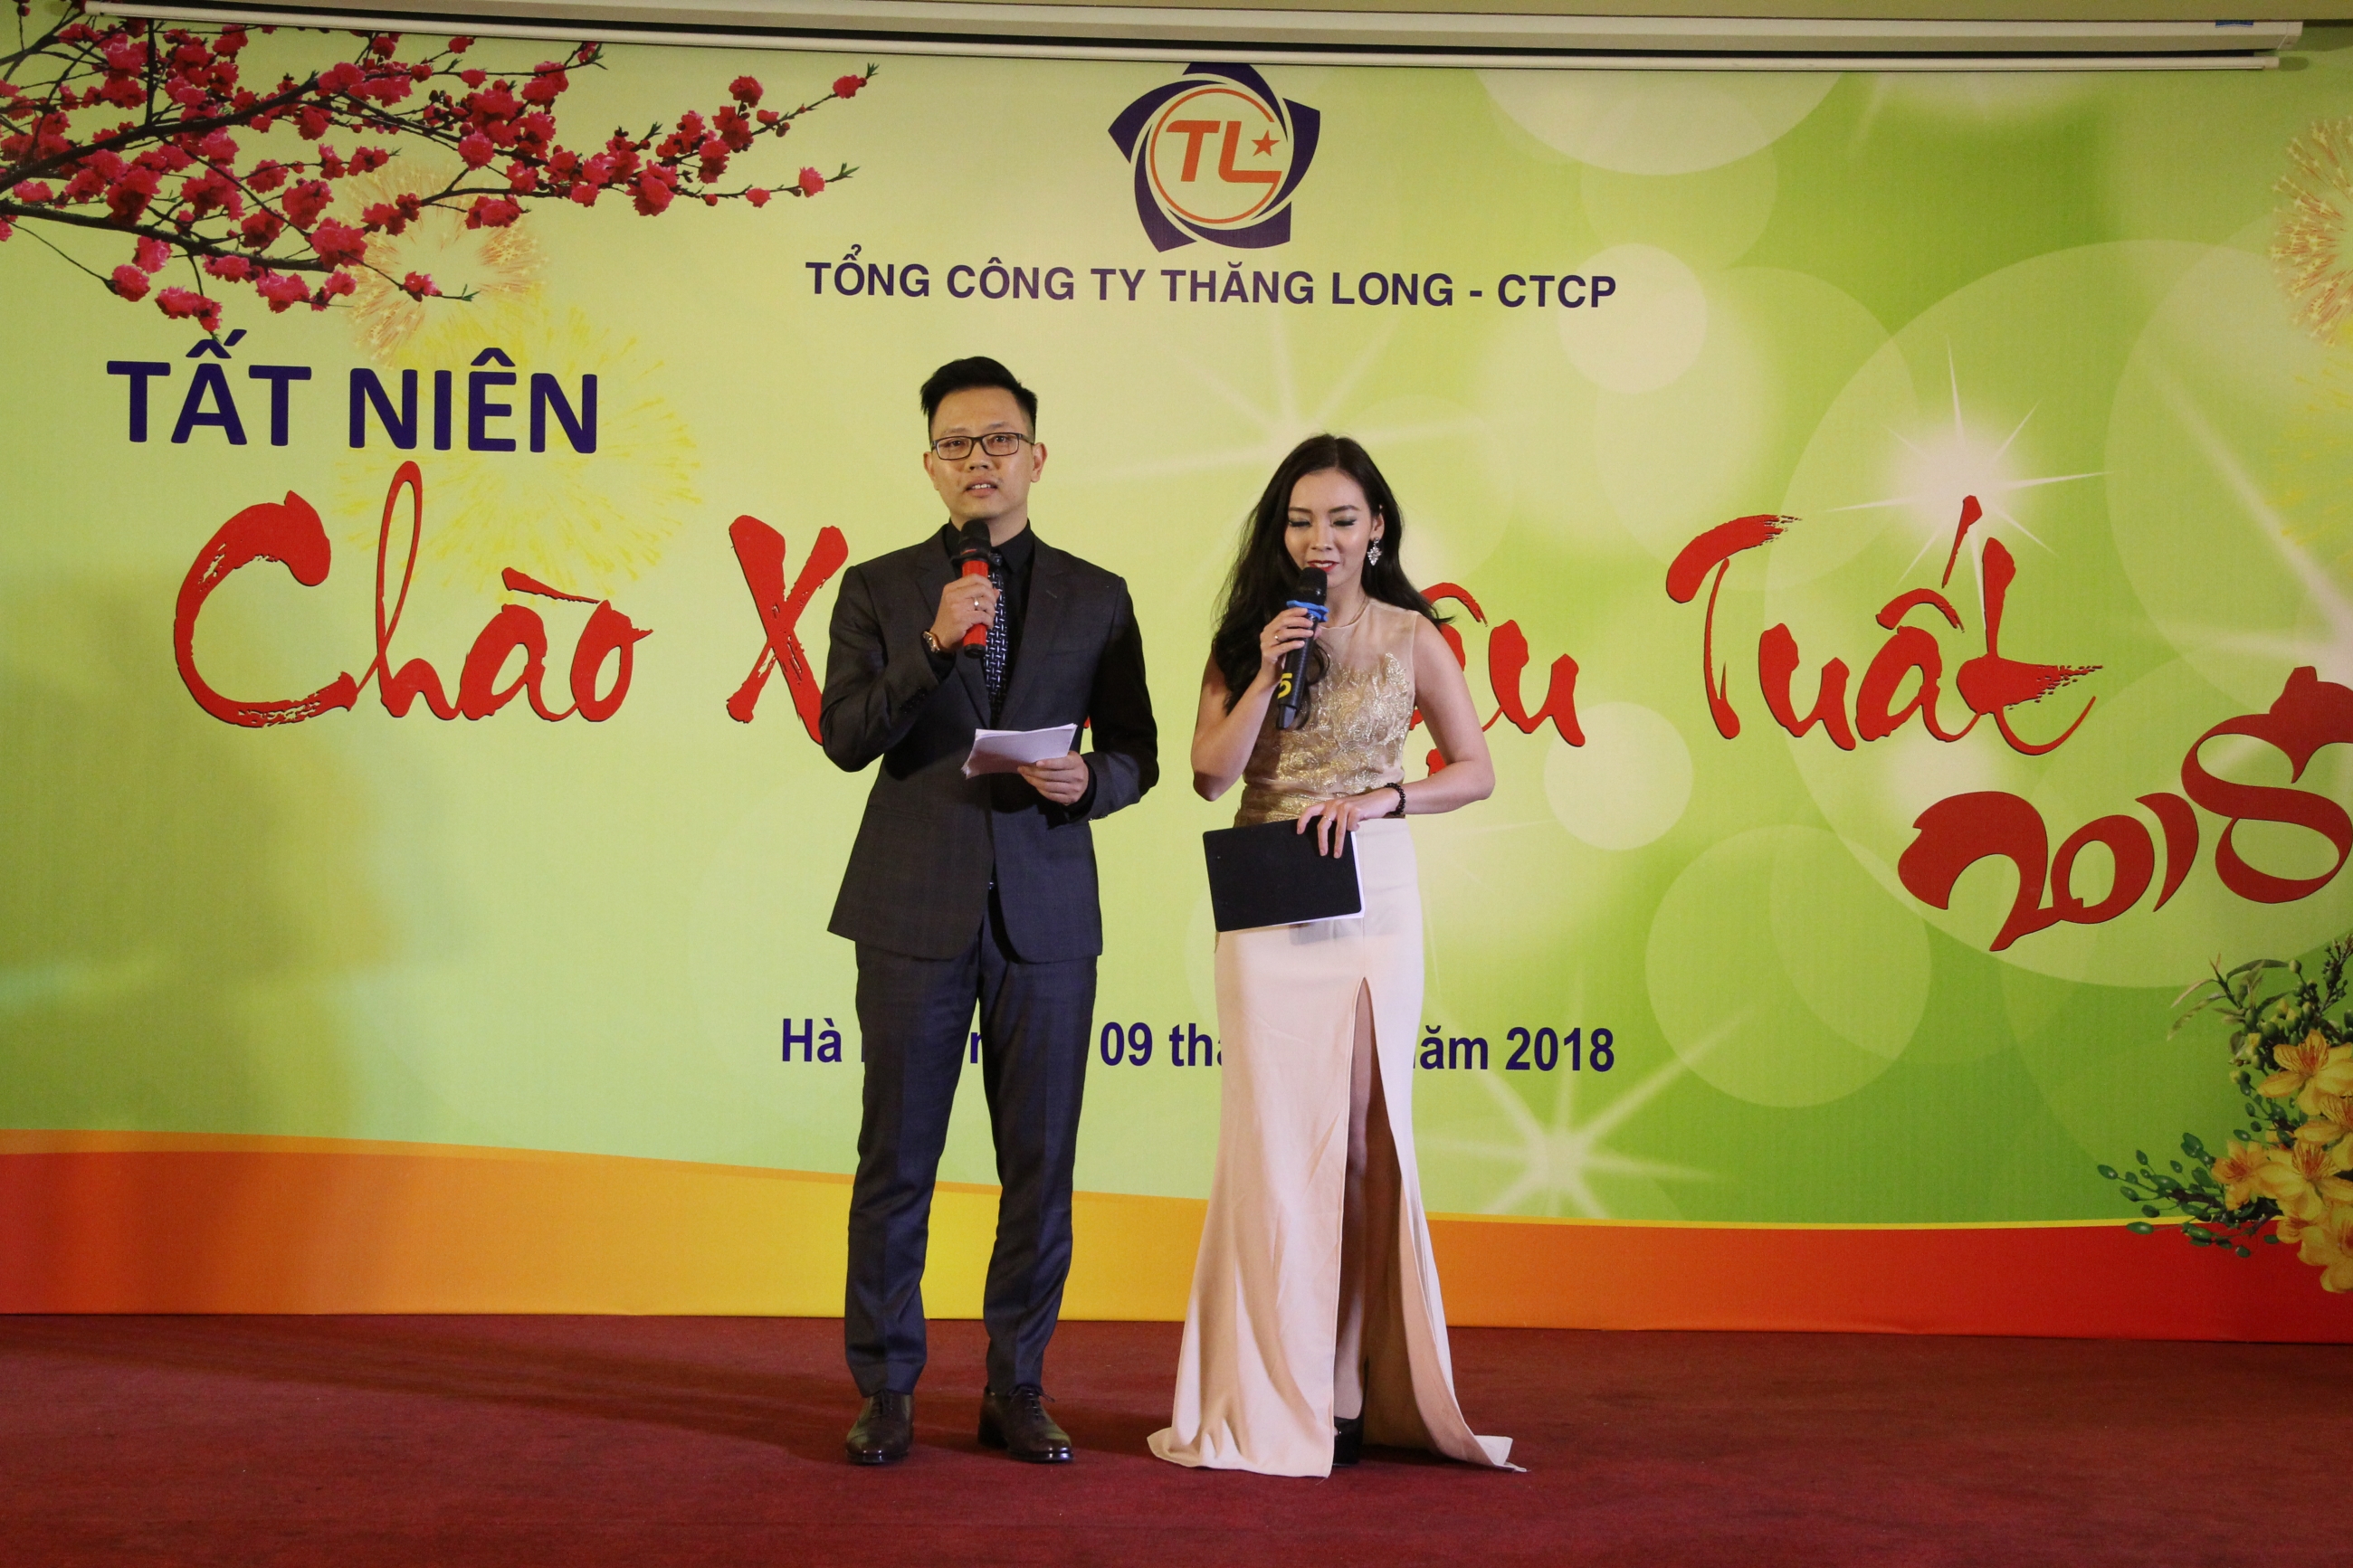 Tổng công ty Thăng Long -CTCP tưng bừng tổ chức tổng kết cuối năm 2017